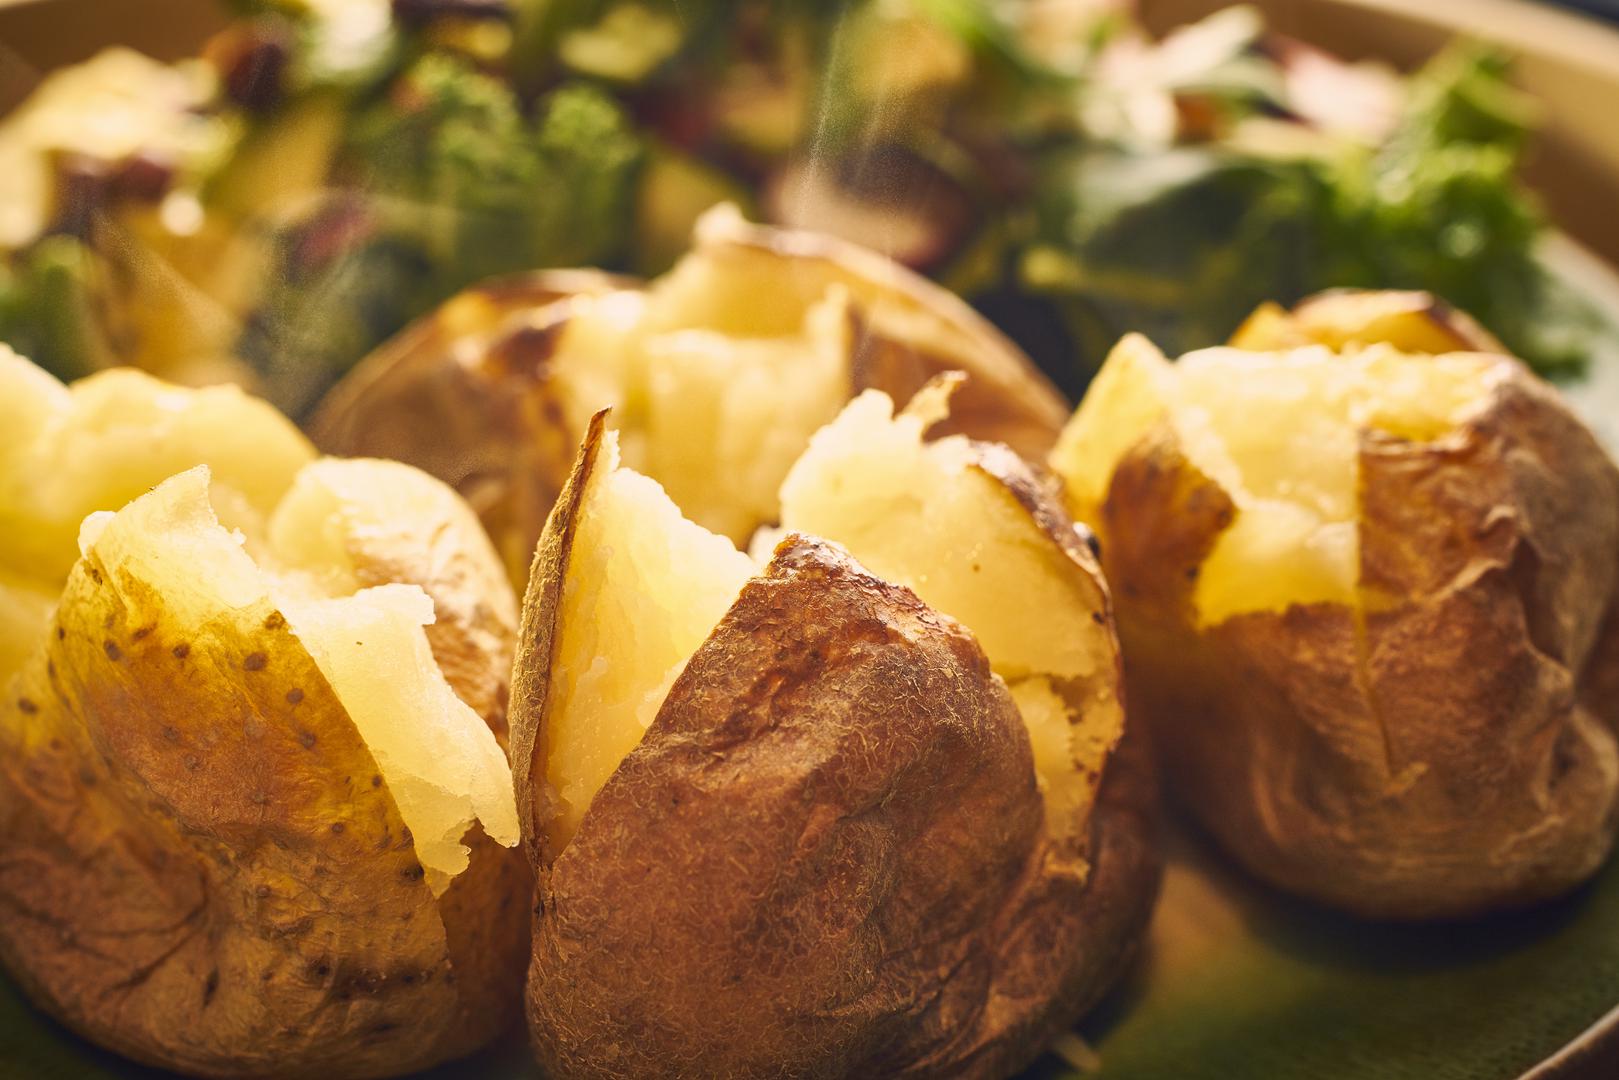 Umjesto da ga ogulite, ispecite krumpir zajedno s korom koja ima jako puno vlakana.